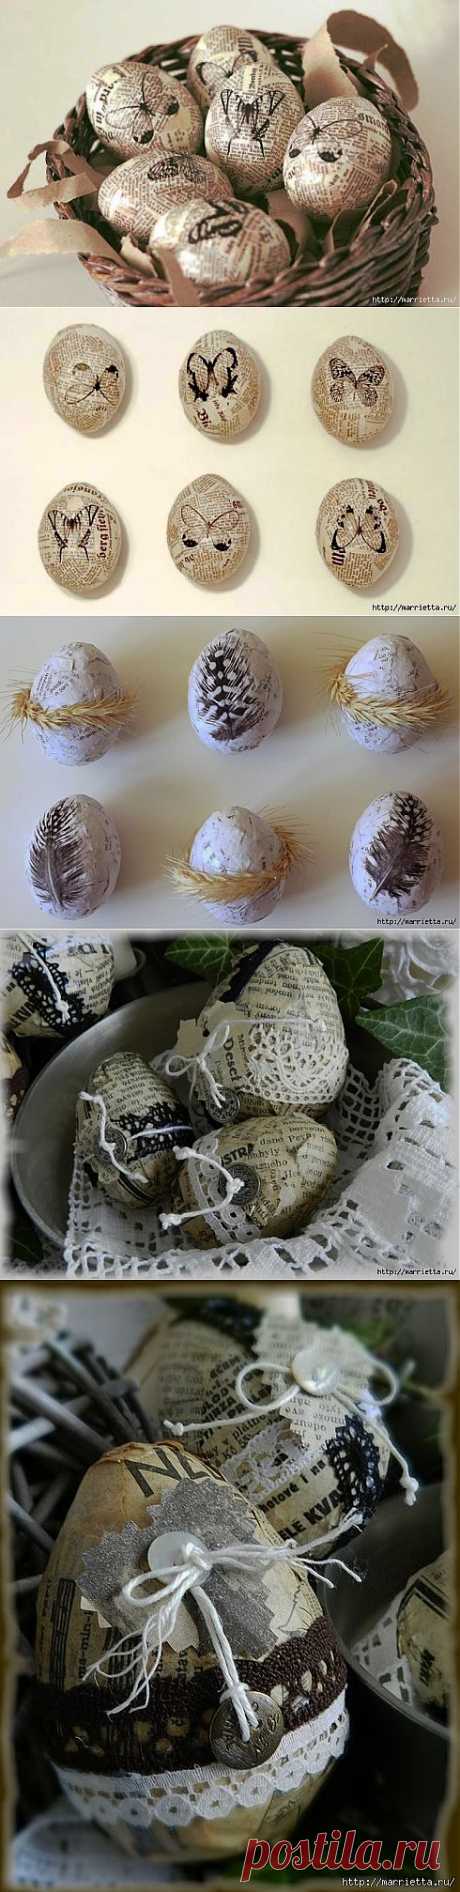 Пасхальные яйца в винтажном стиле.